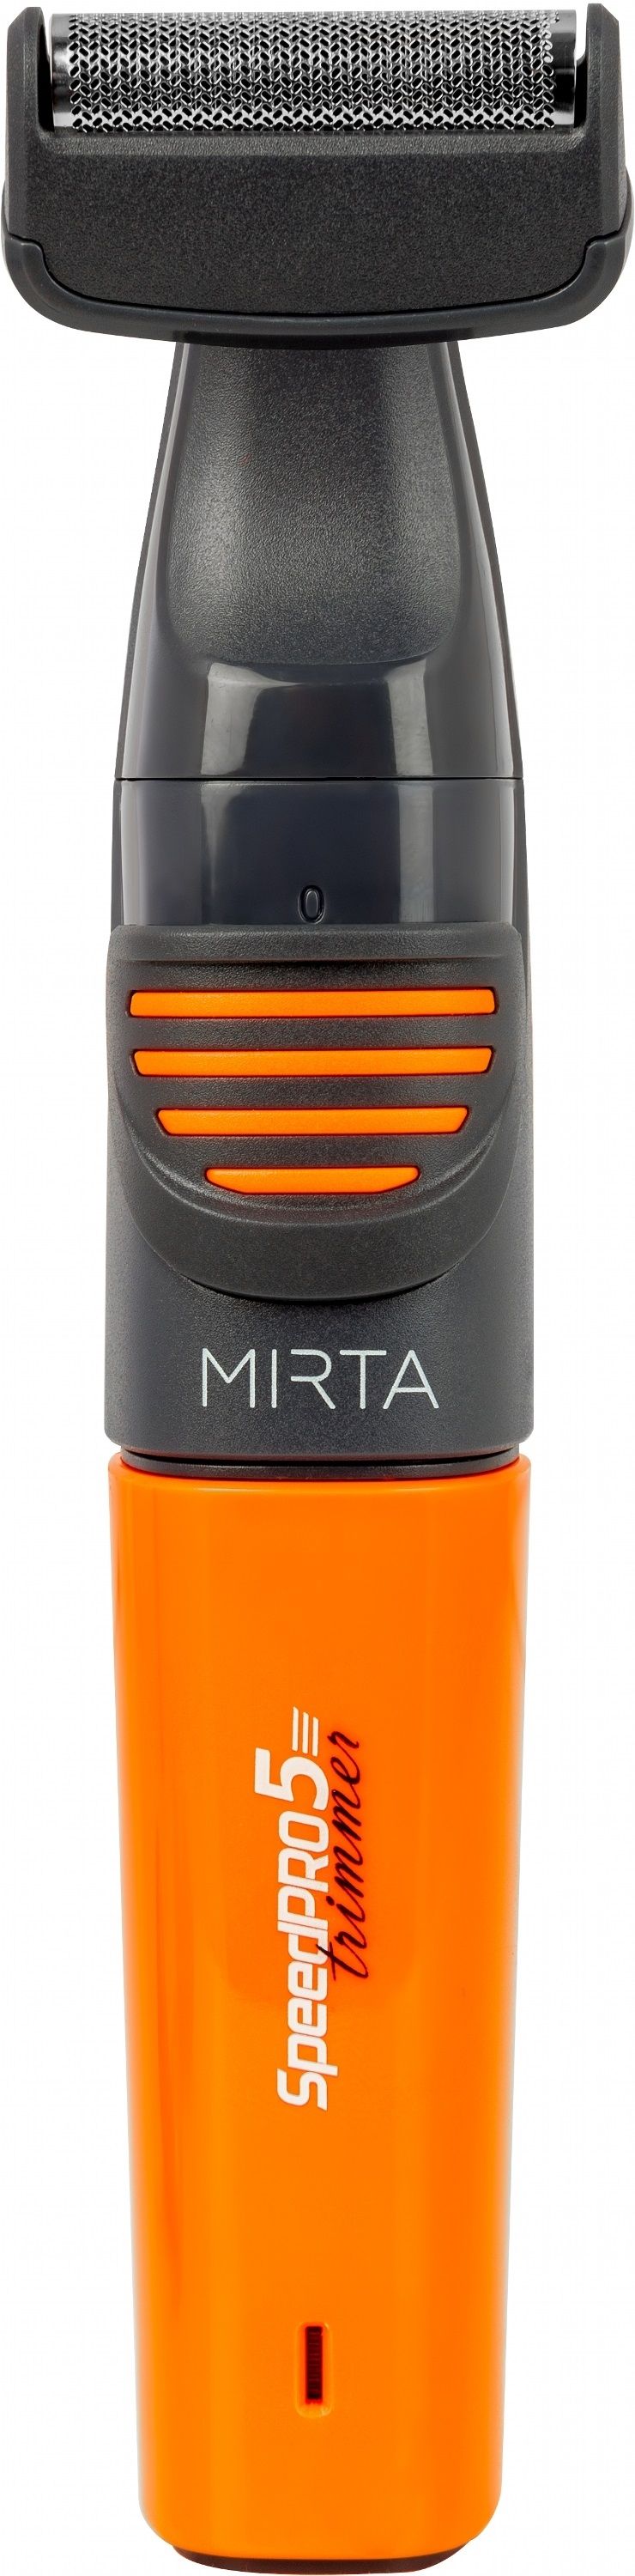 Акция на Тример універсальний MIRTA HT-5216 от Територія твоєї техніки - 6